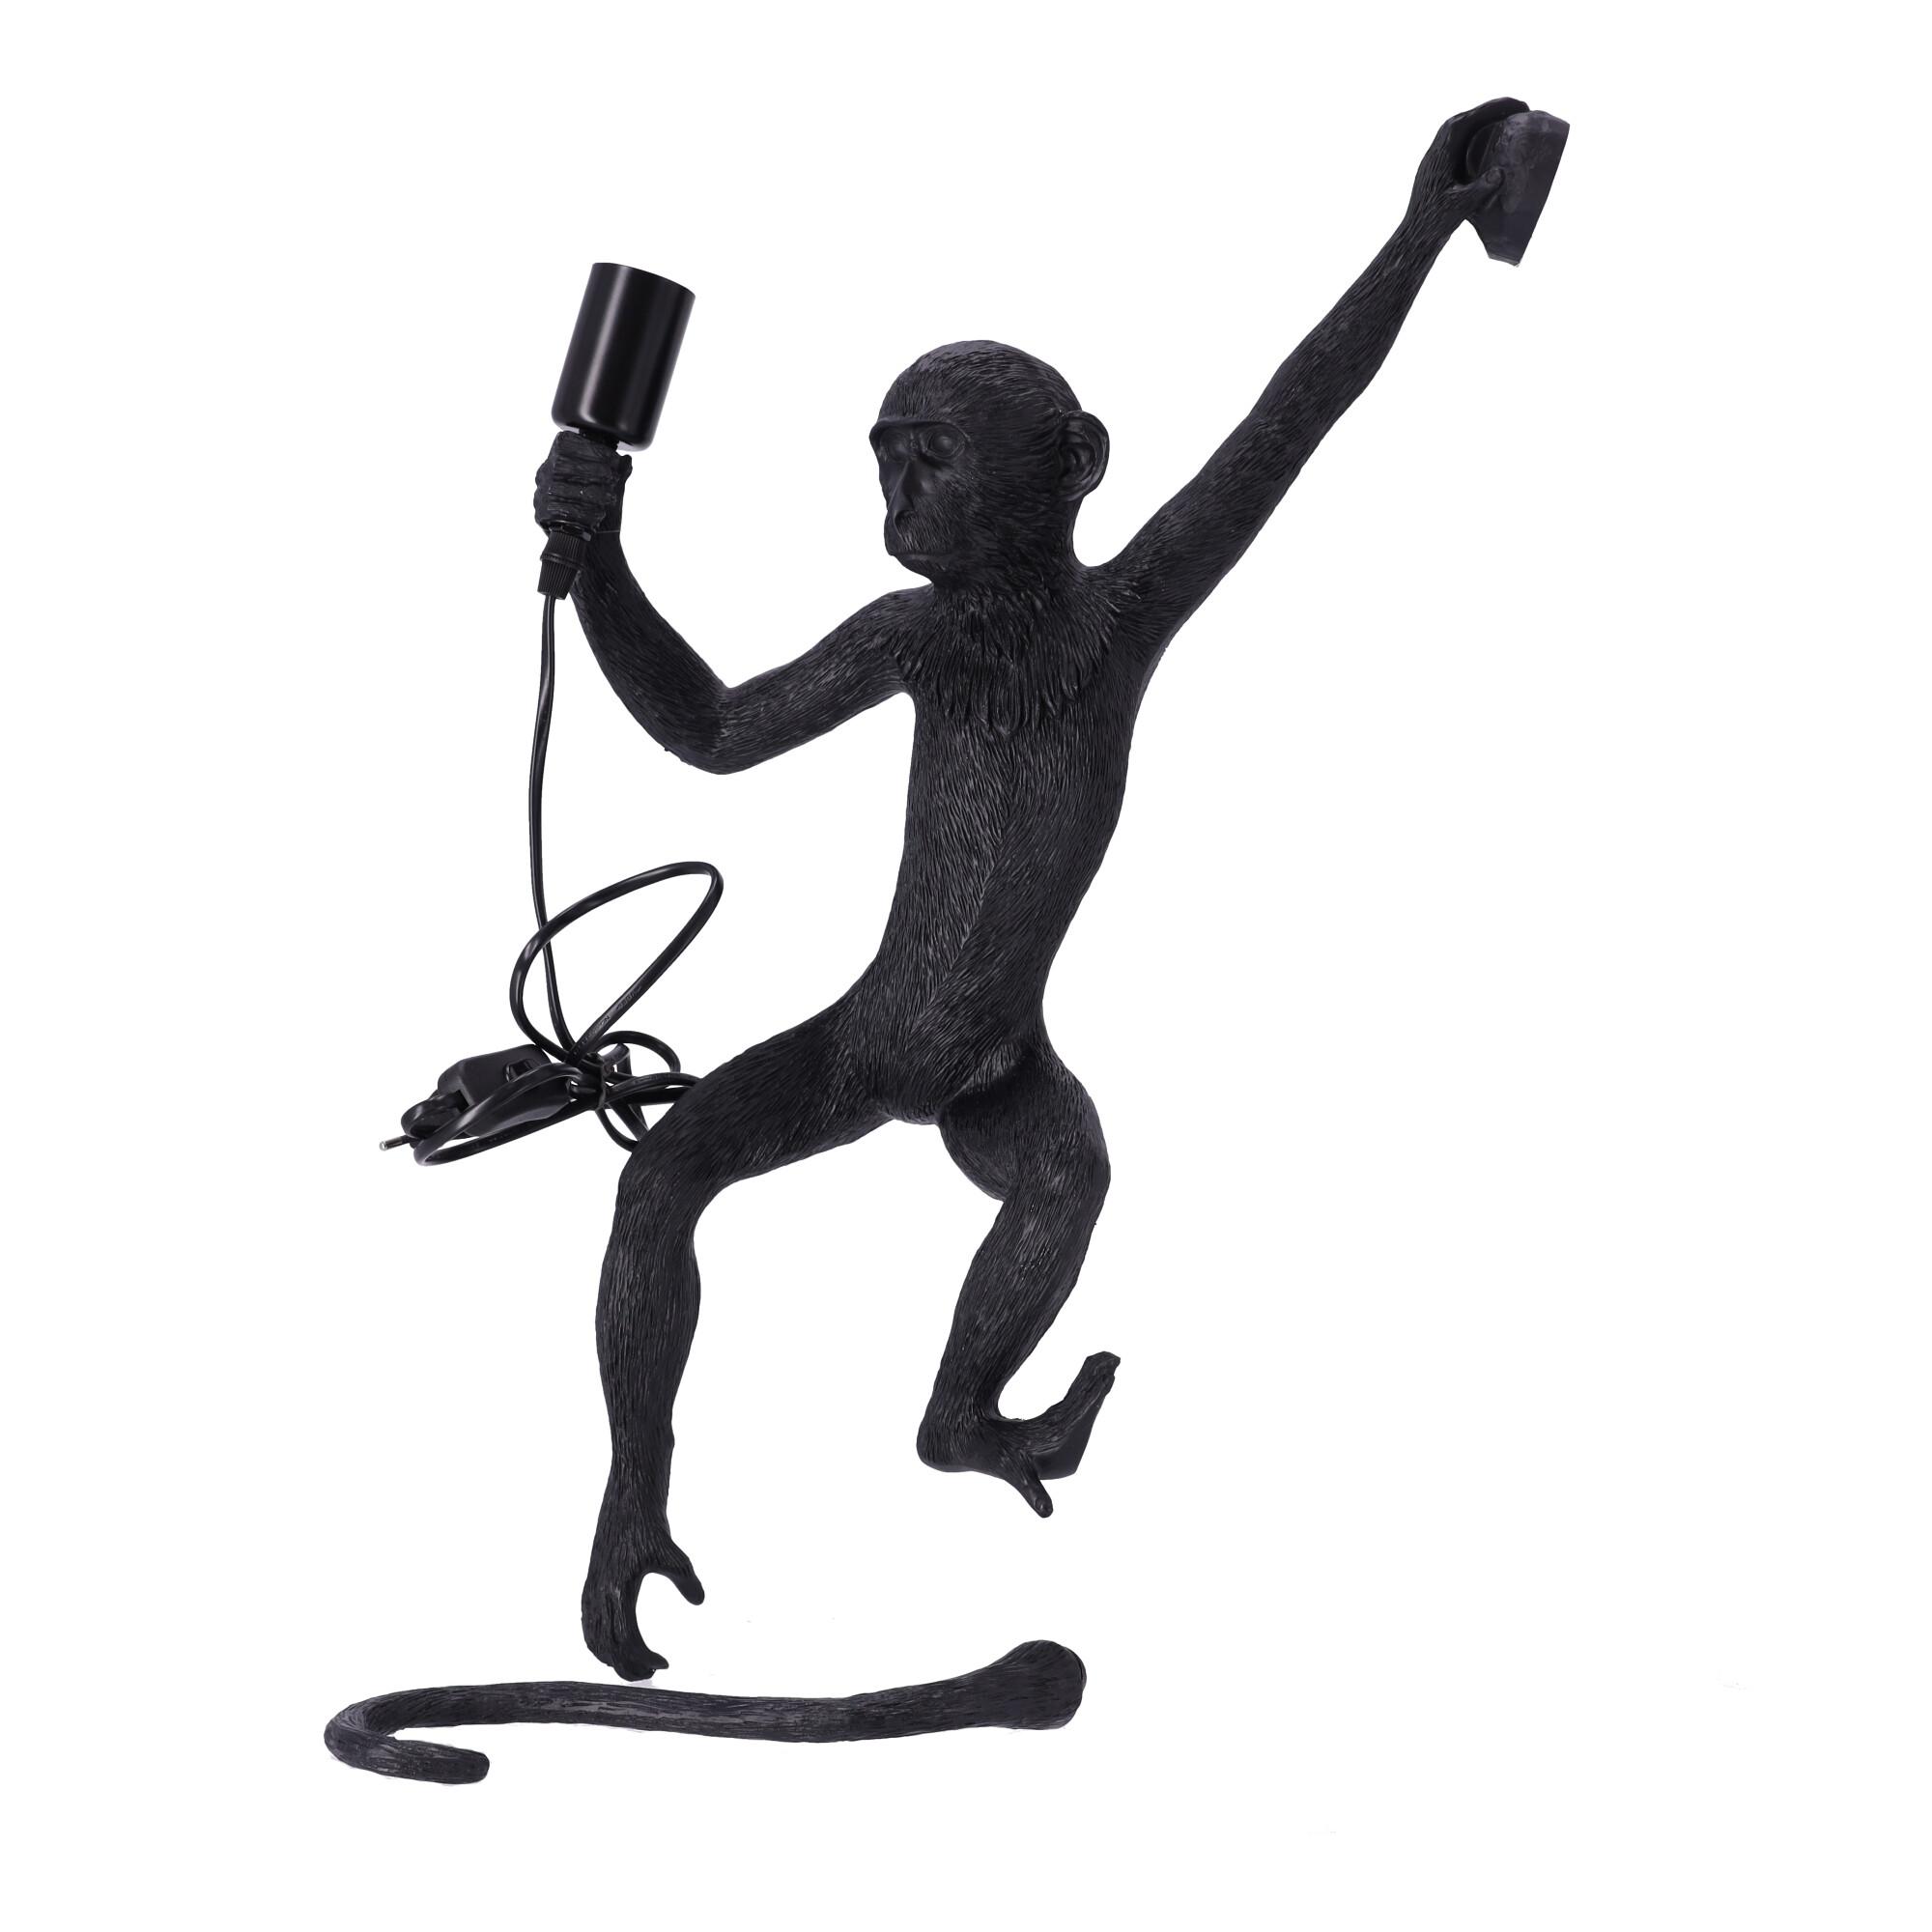 Stylish wall lamp - a monkey - left hand